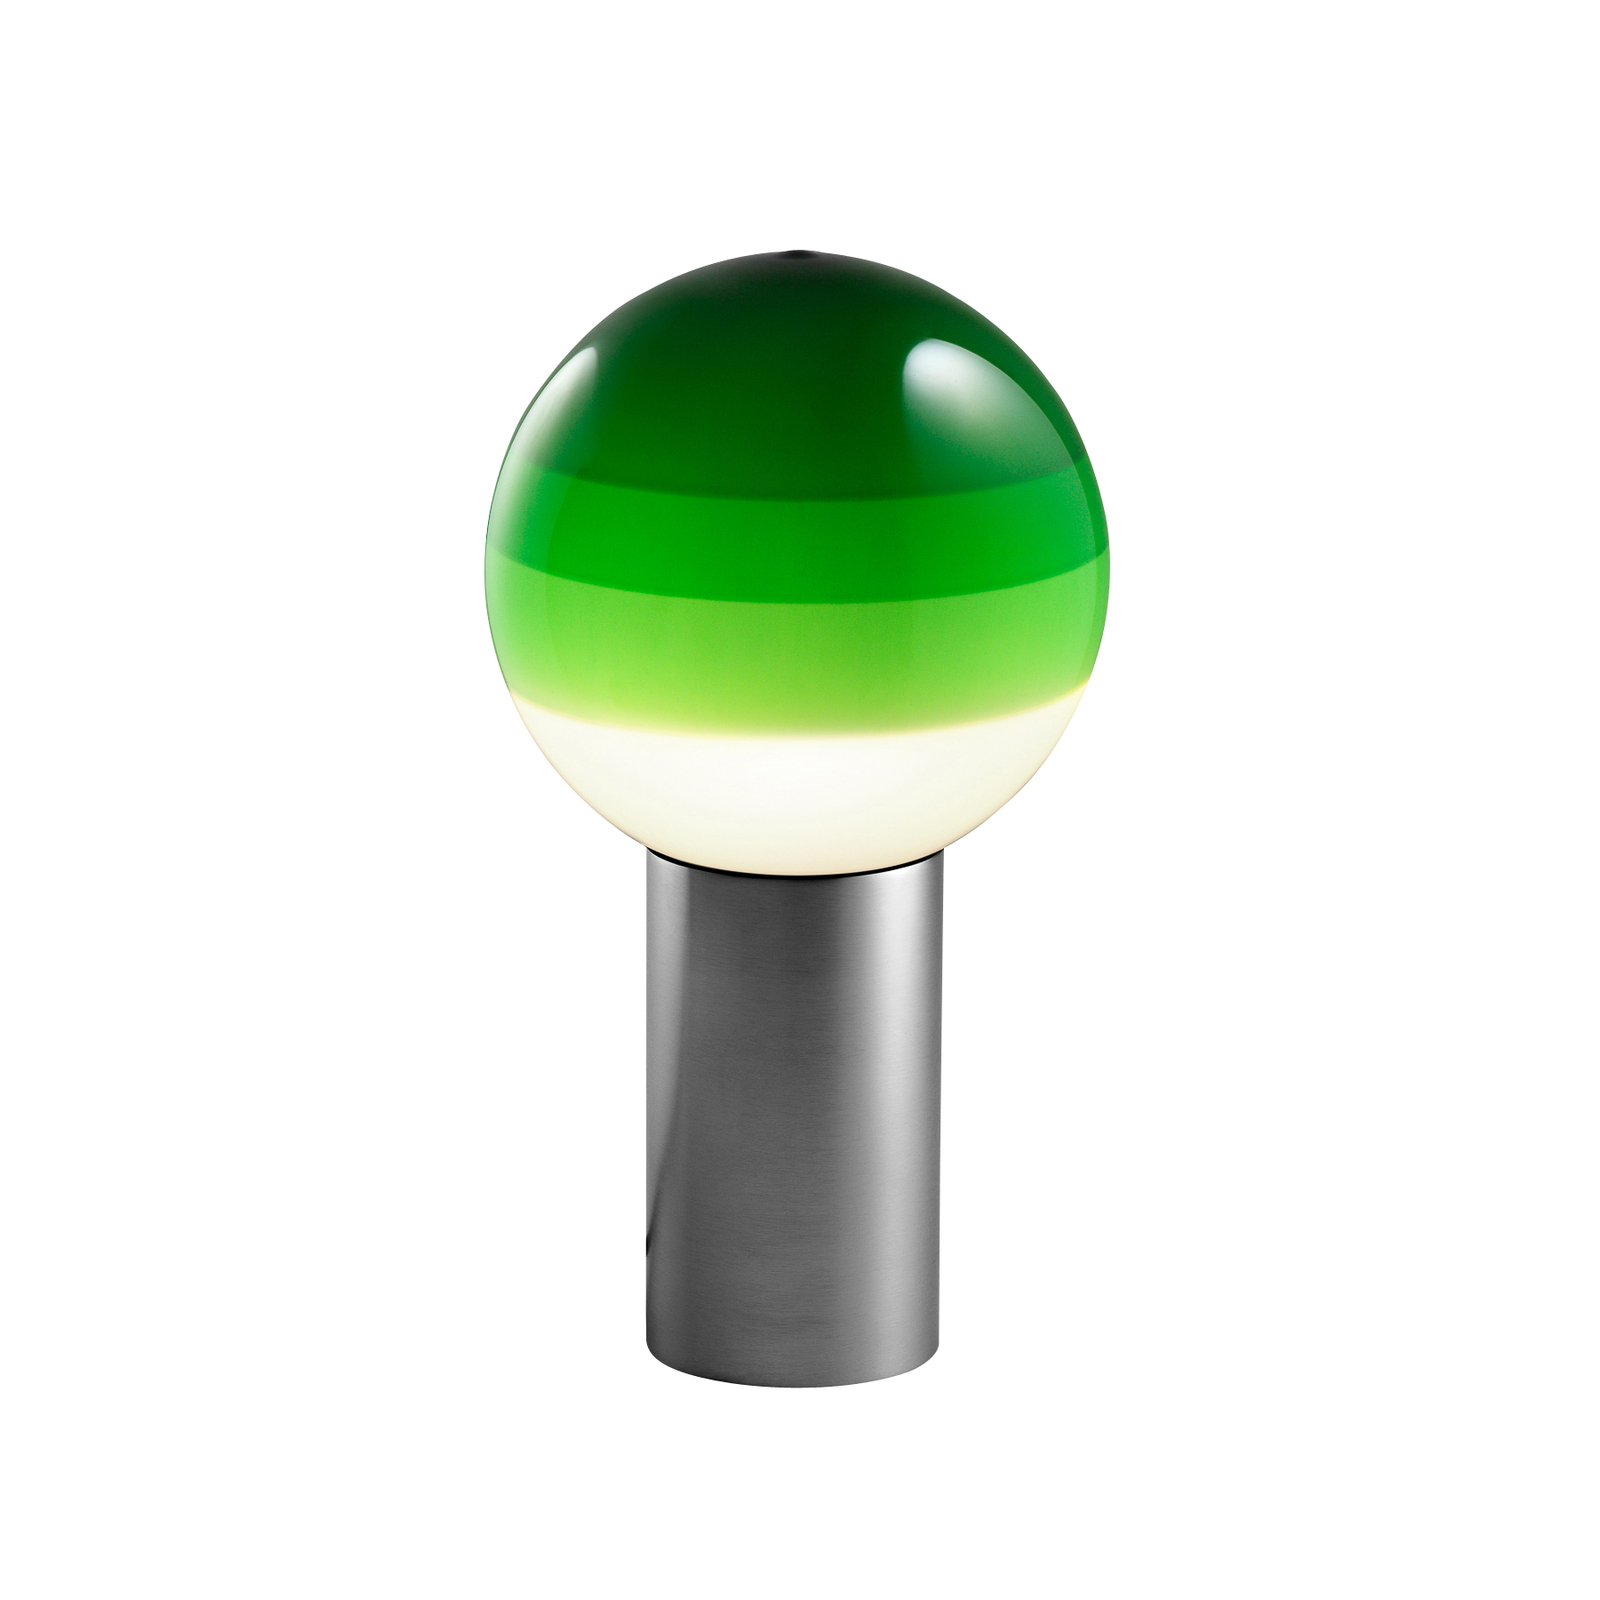 MARSET "Dipping Light" stalinė lempa žalia/grafito spalva